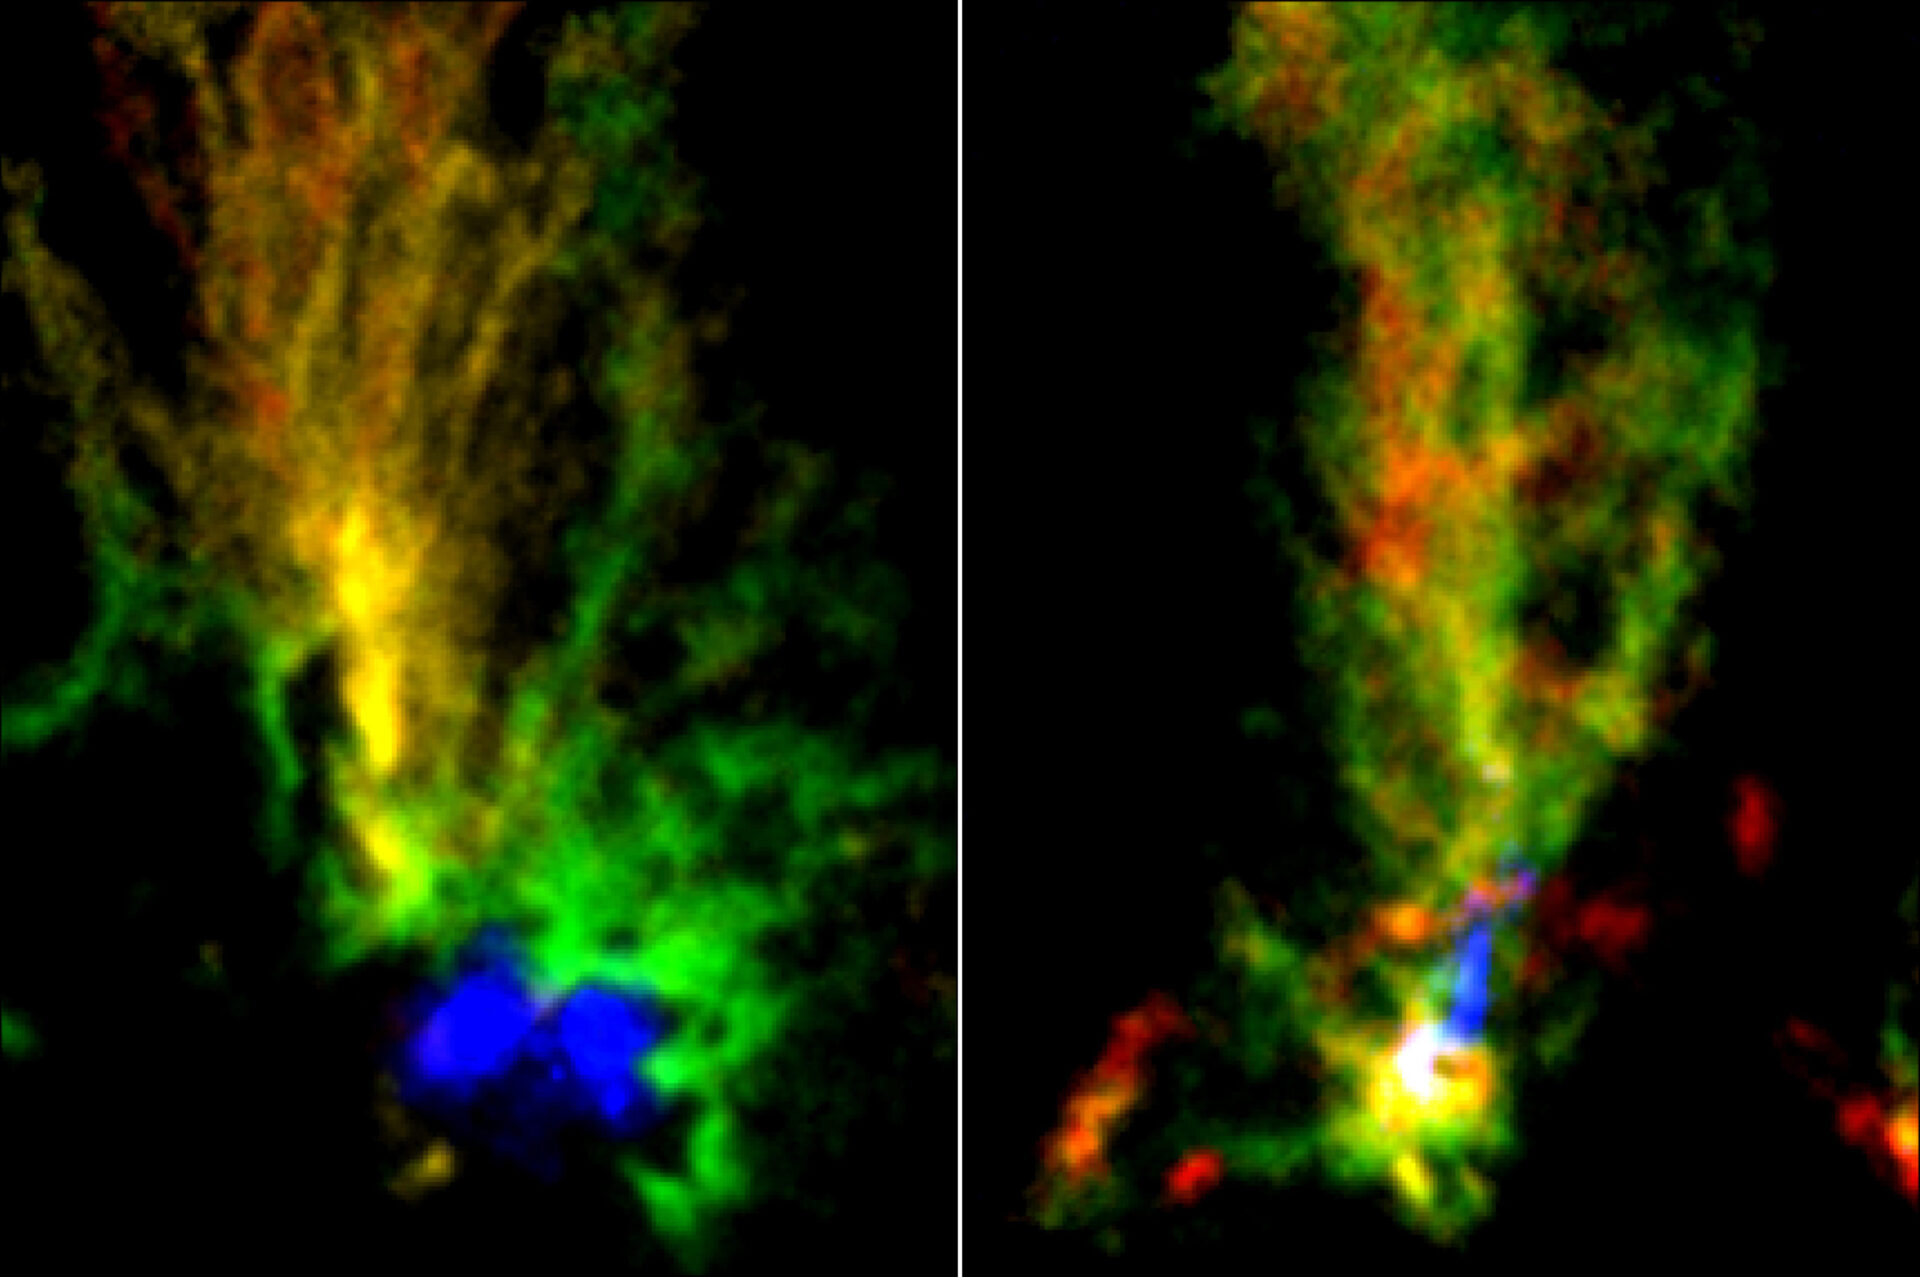 <p>Imágenes de las nubes moleculares N159E-Papillon Nebula (izquierda) y N159W Sur (derecha) obtenidas con ALMA. Los colores rojo y verde muestran la distribución del gas molecular en distintas velocidades observado en la emisión de 13CO. La zona en azul en la nebulosa N159E-Papillon representa el gas de hidrógeno ionizado observado con el telescopio espacial Hubble. El área en azul en N159W Sur representa la emisión de partículas de polvo observada con ALMA. Créditos: ALMA (ESO/NAOJ/NRAO)/Fukui et al./Tokuda et al./telescopio espacial Hubble de la NASA/ESA</p>
